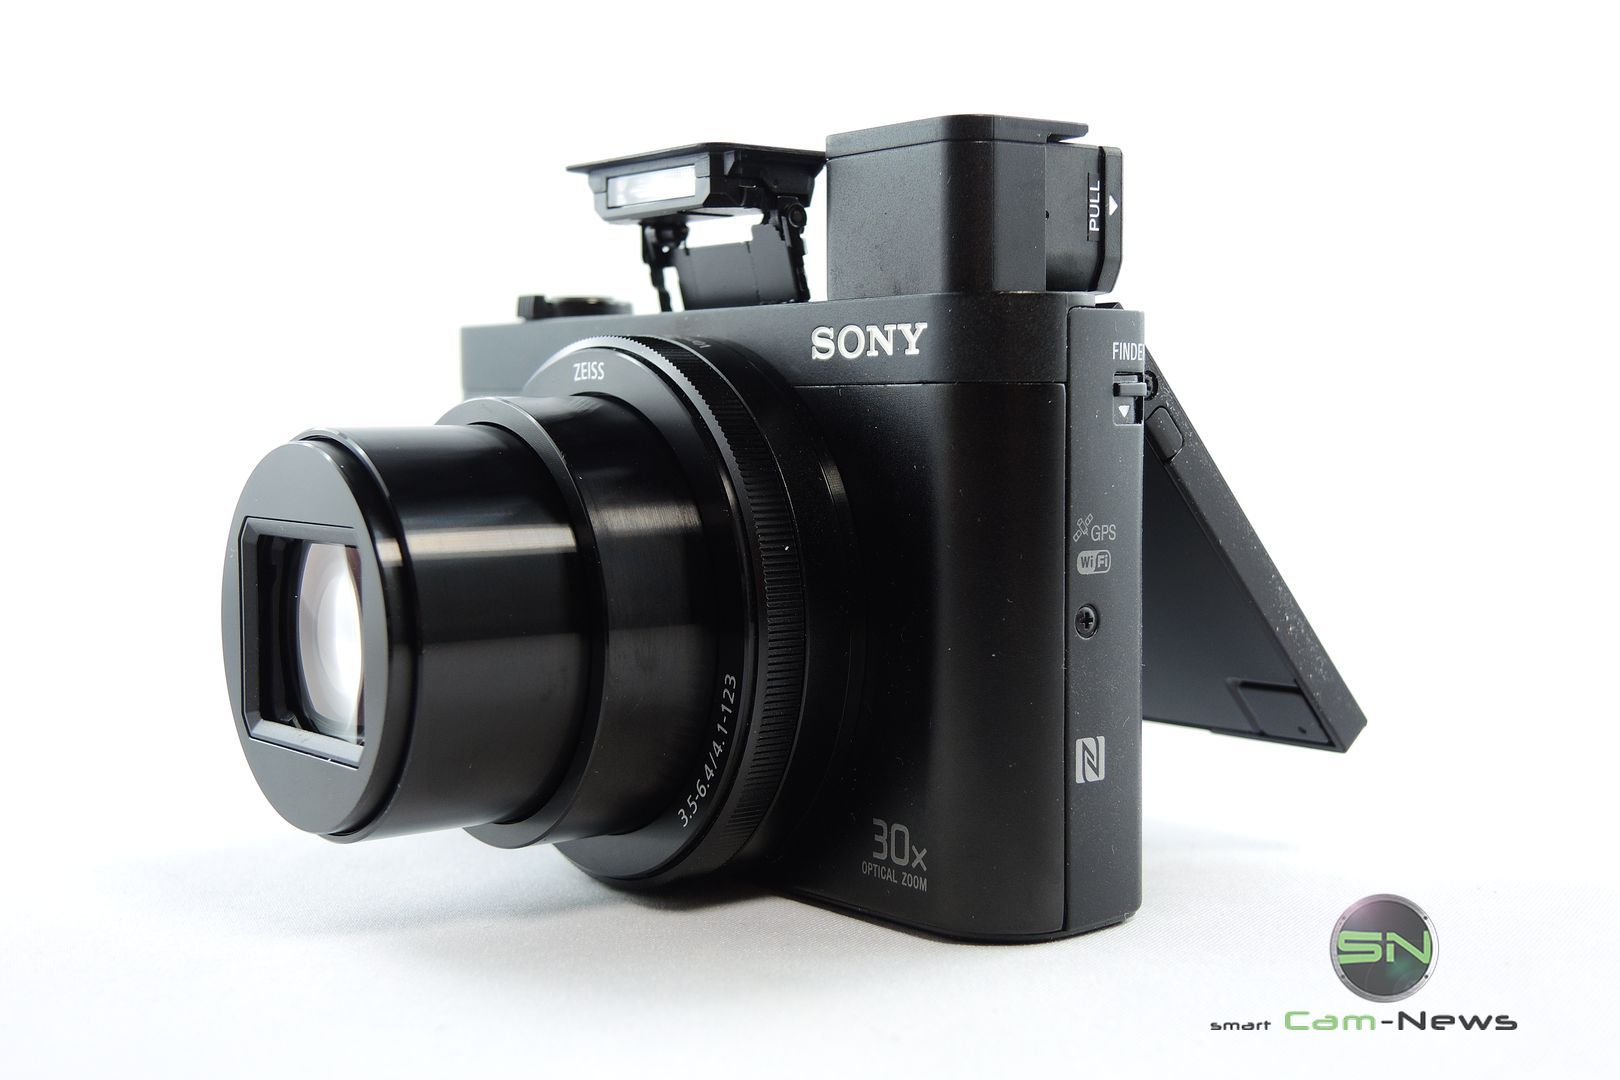 Top-Ausgestattet-Sony-HX90V-SmartCamNews